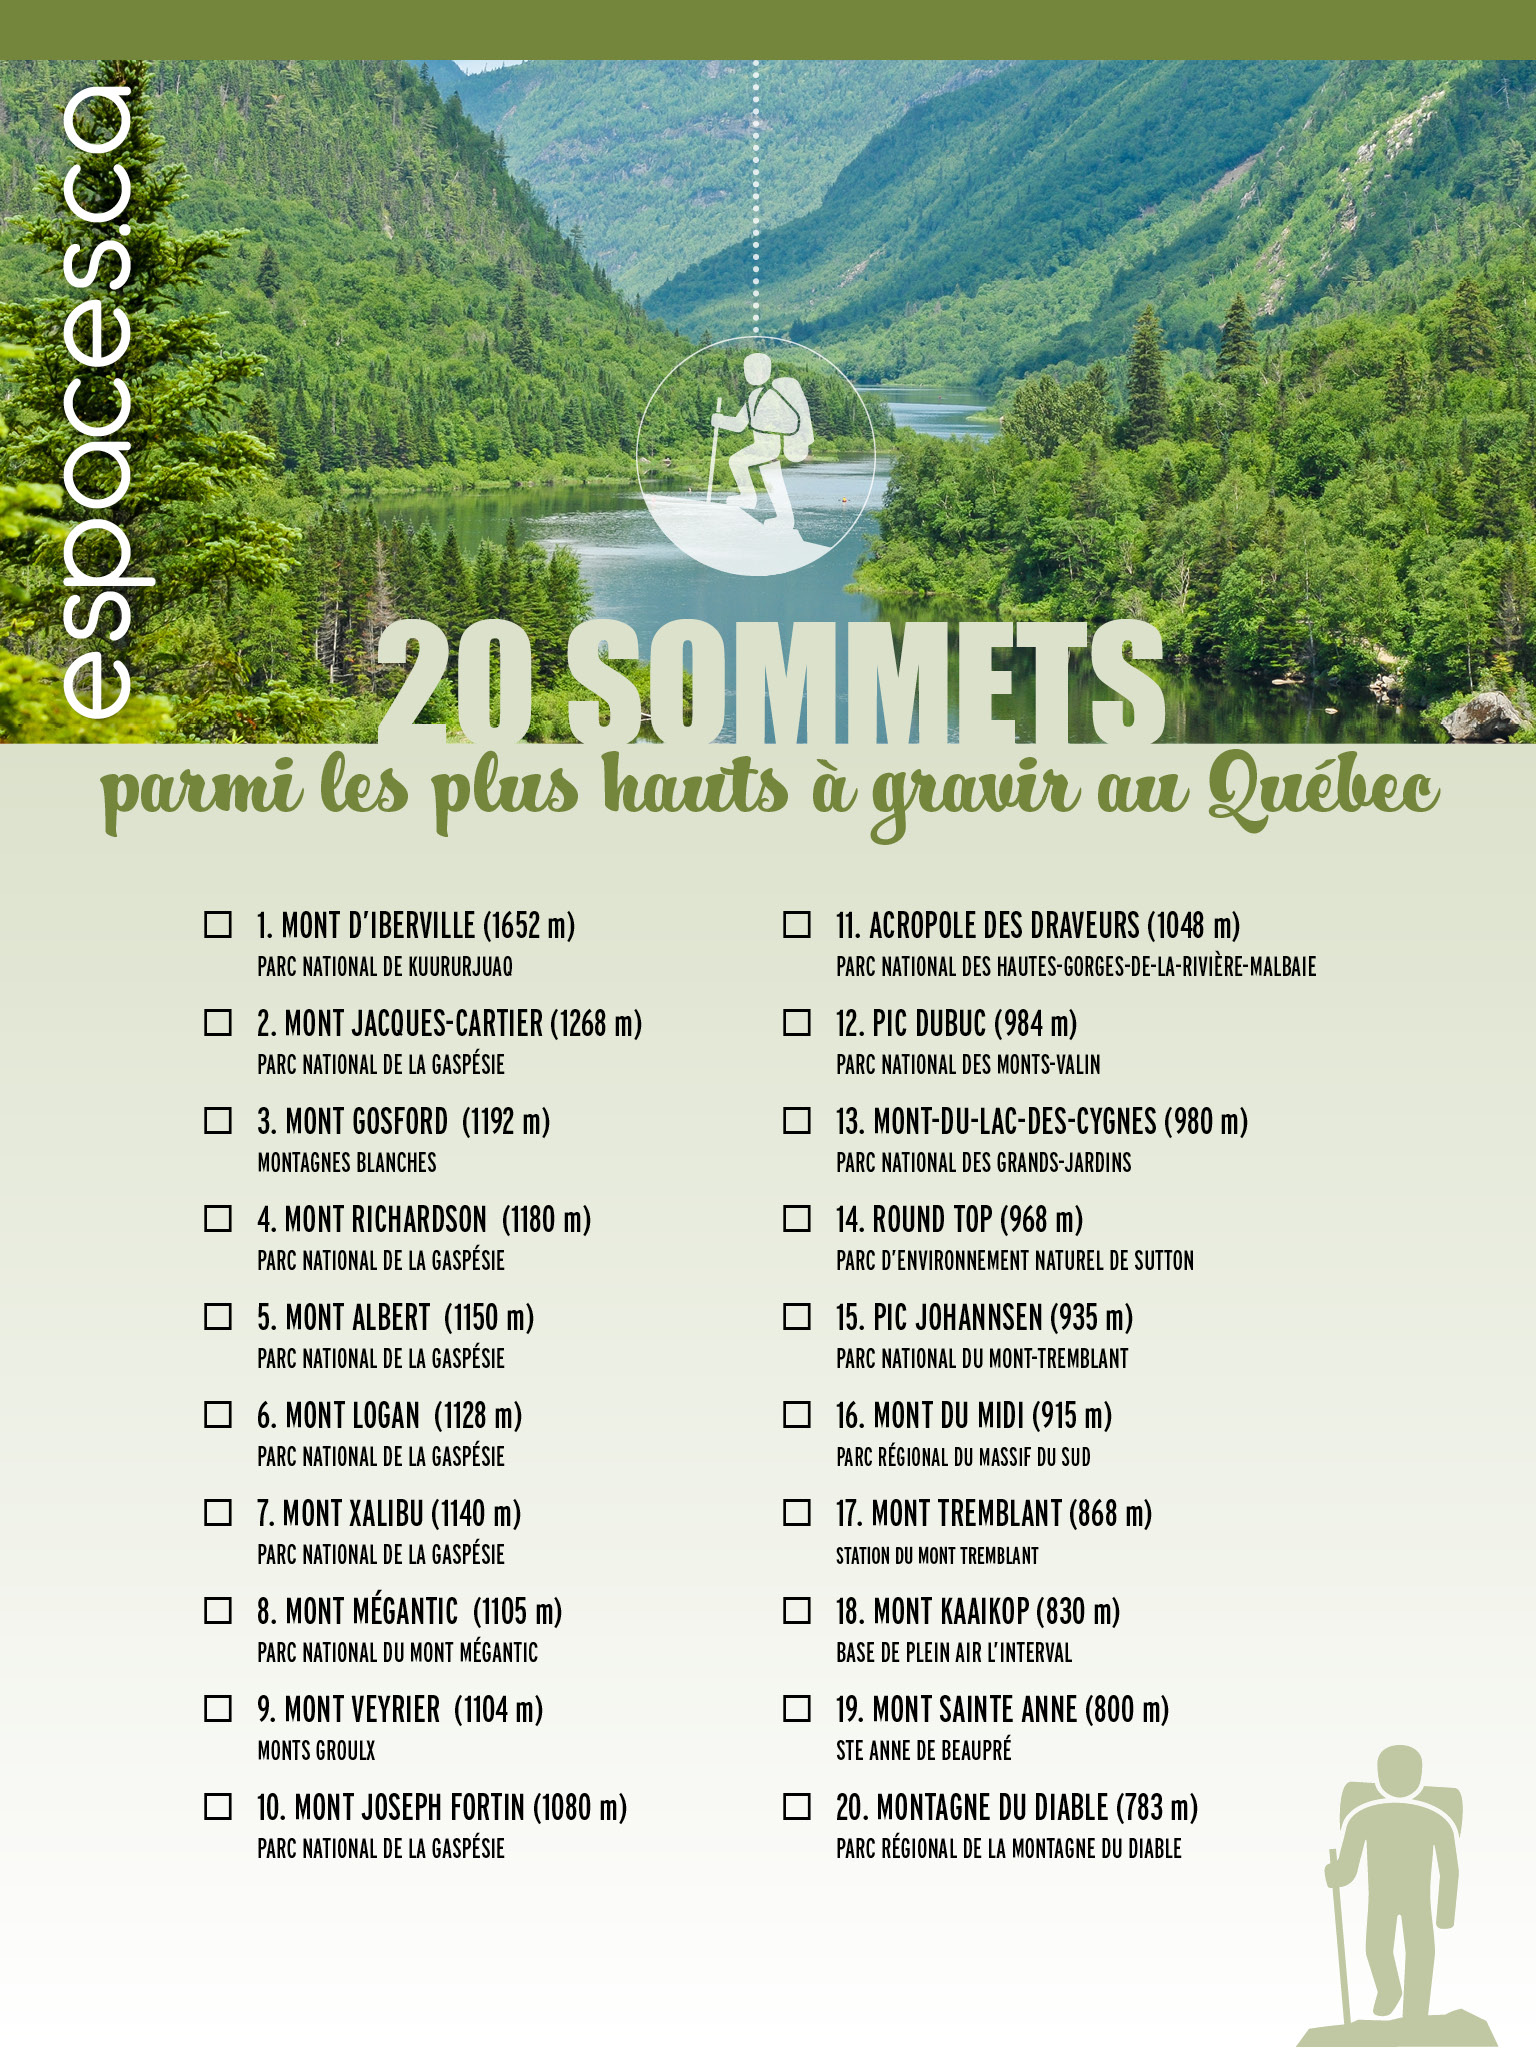 20 sommets parmi les plus hauts à gravir au Québec | Espaces